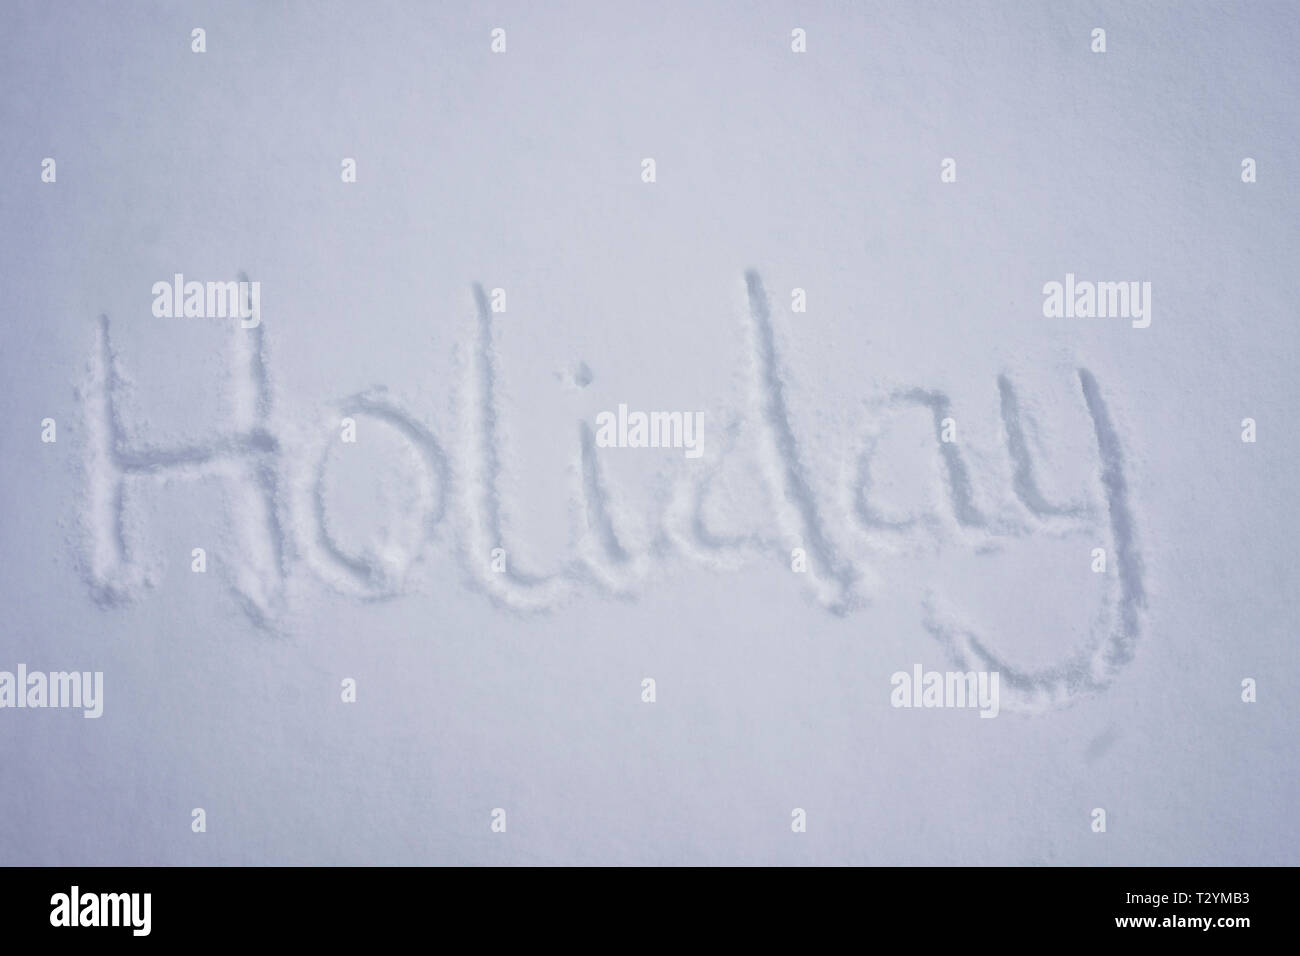 Urlaub Wort in einem kalten Schnee Hintergrund Stockfoto